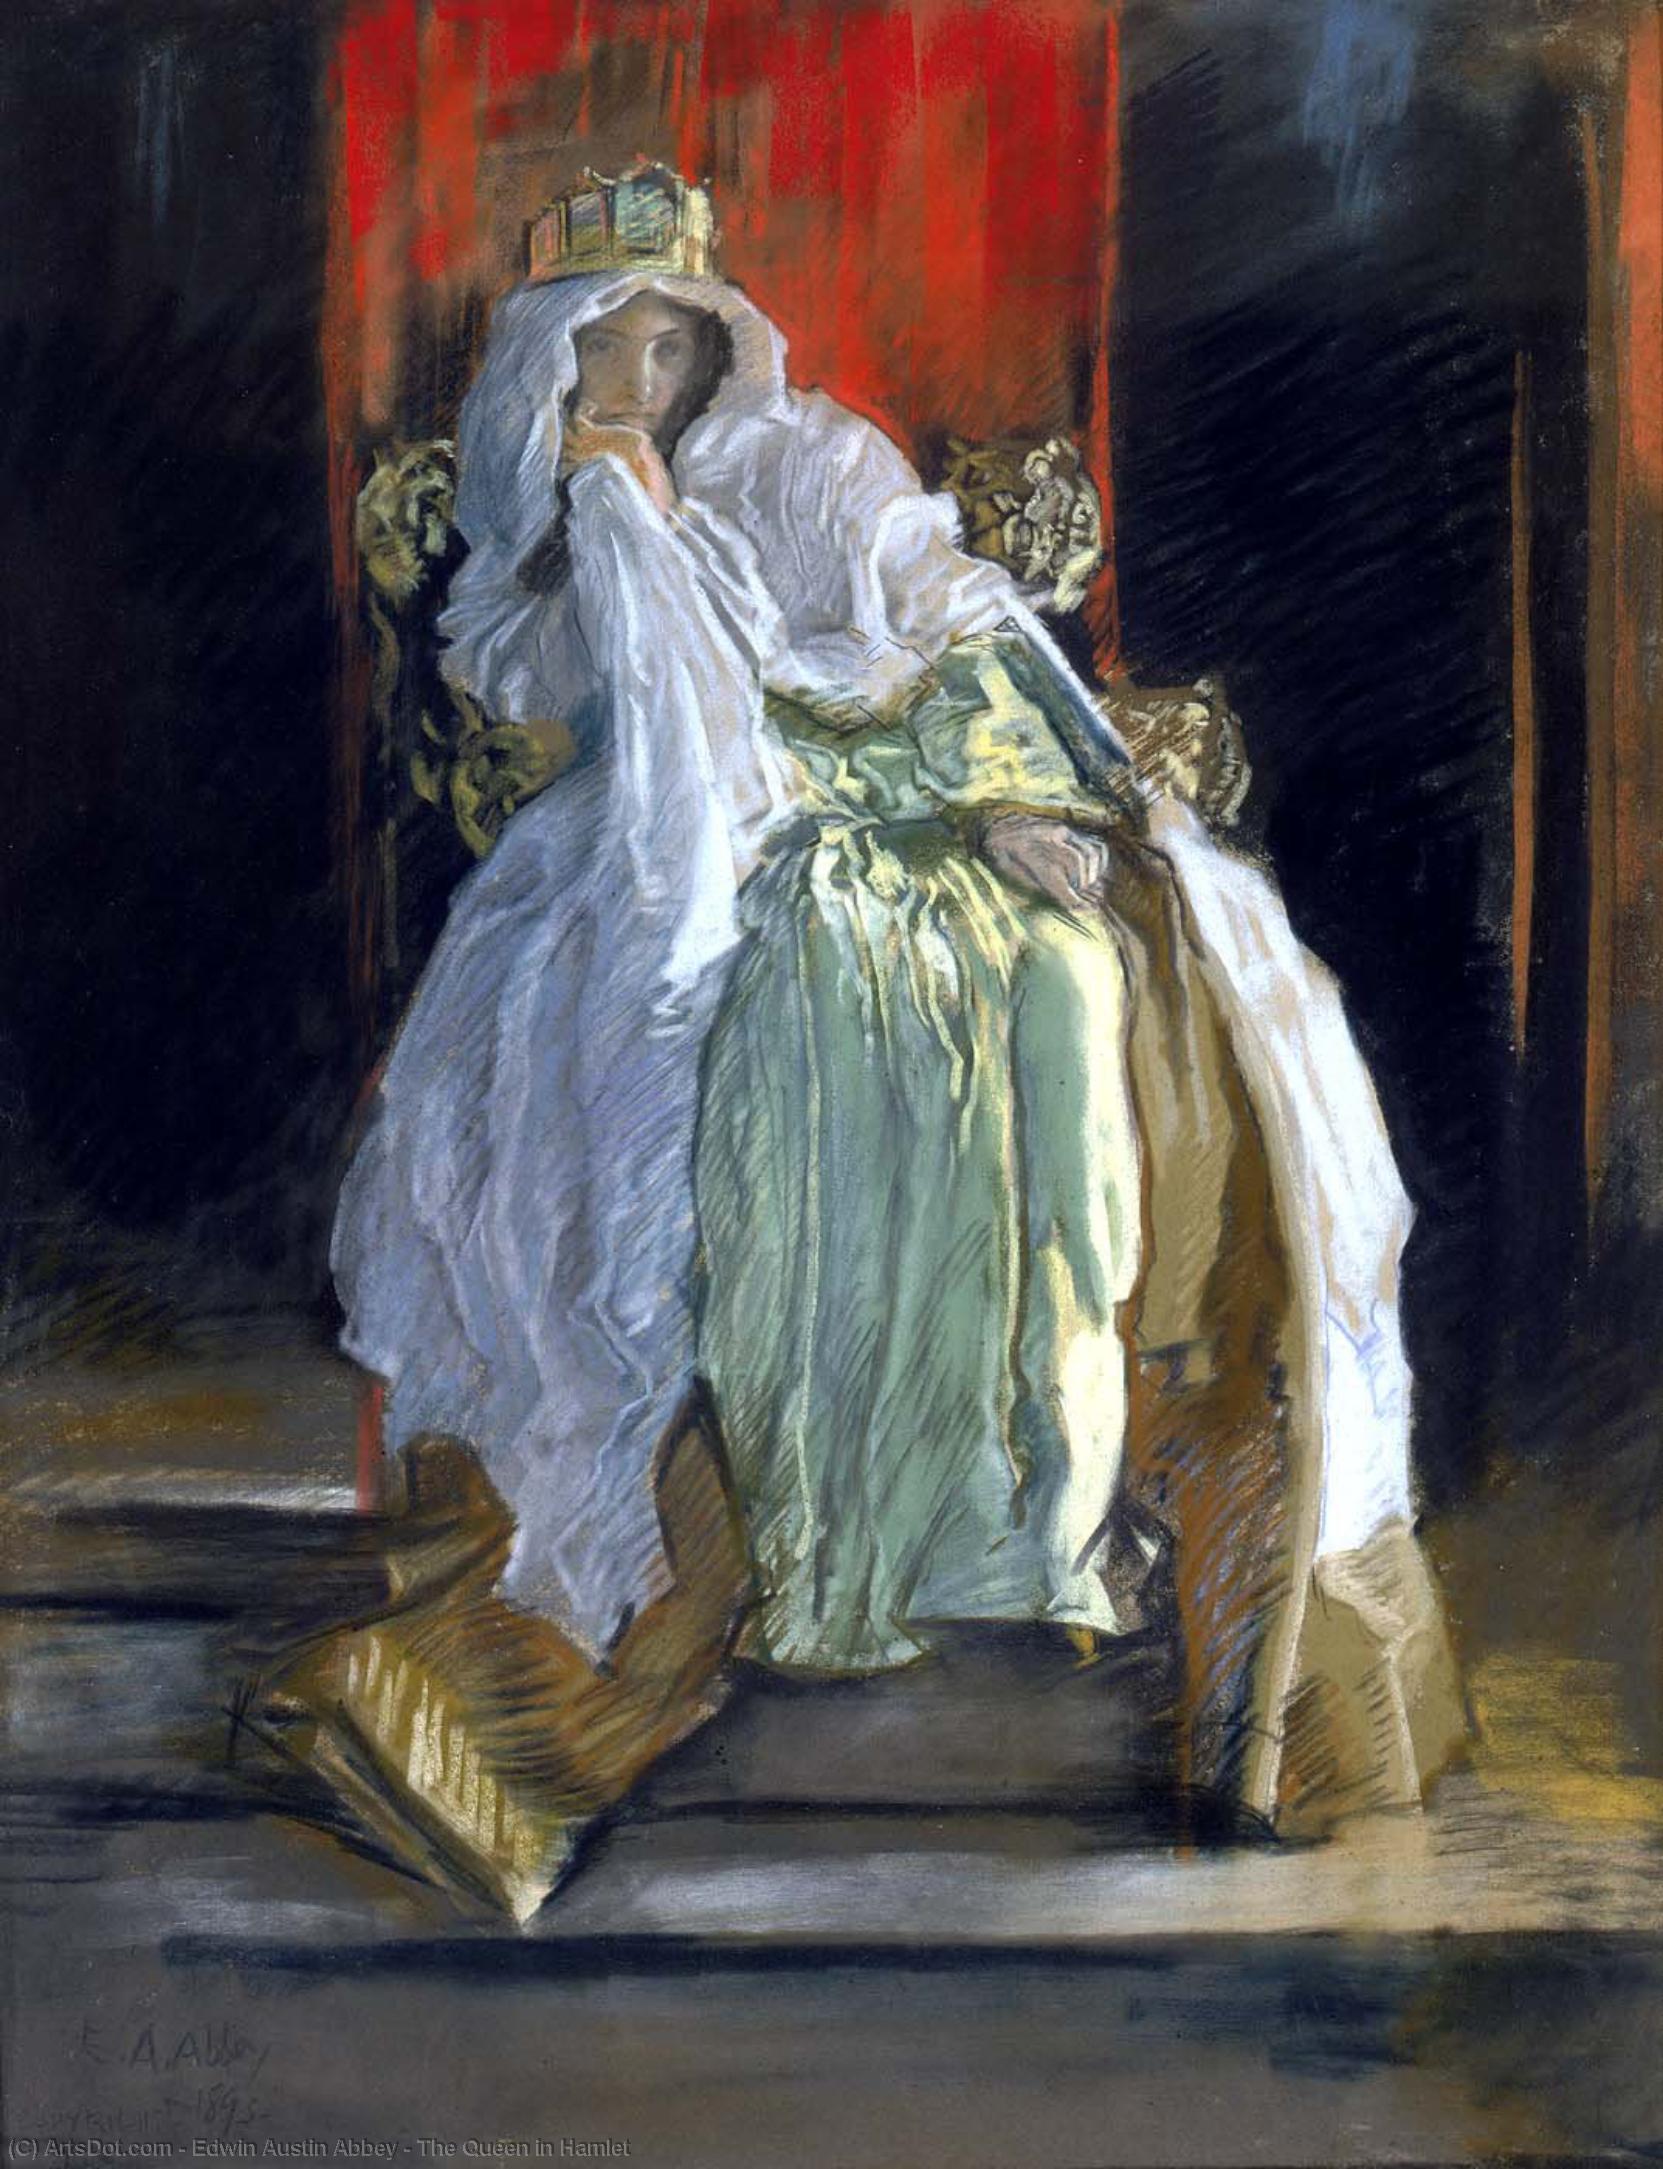 WikiOO.org - Encyclopedia of Fine Arts - Maleri, Artwork Edwin Austin Abbey - The Queen in Hamlet